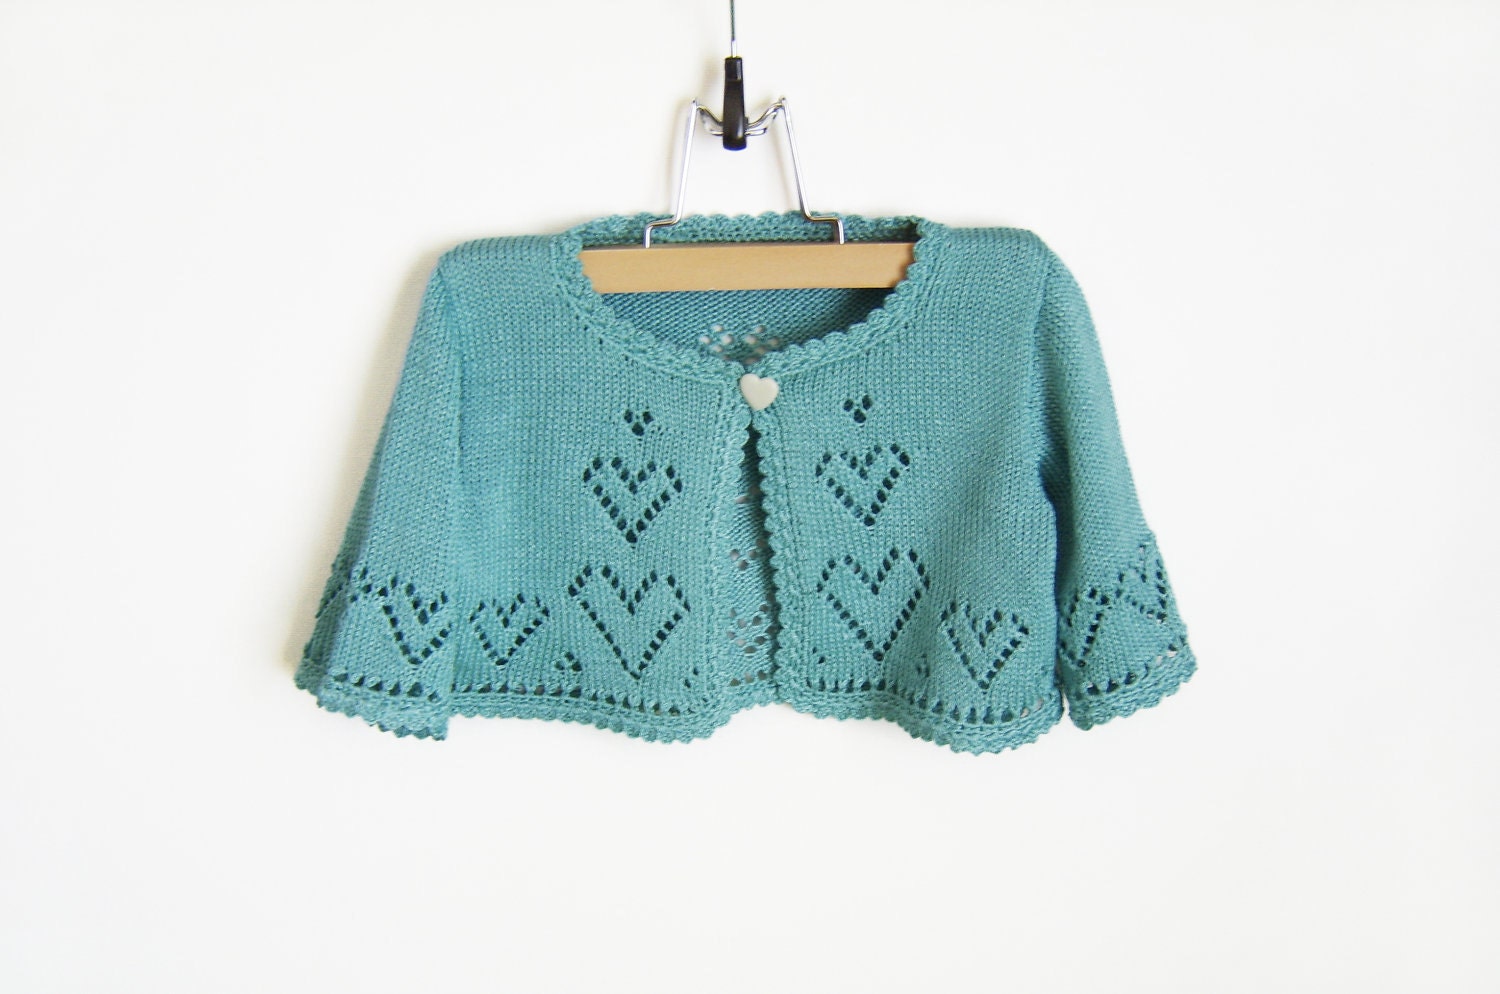 Knitted Baby Bolero Jacket - Turquoise Blue, 2 - 2.5 years - SasasHandcrafts